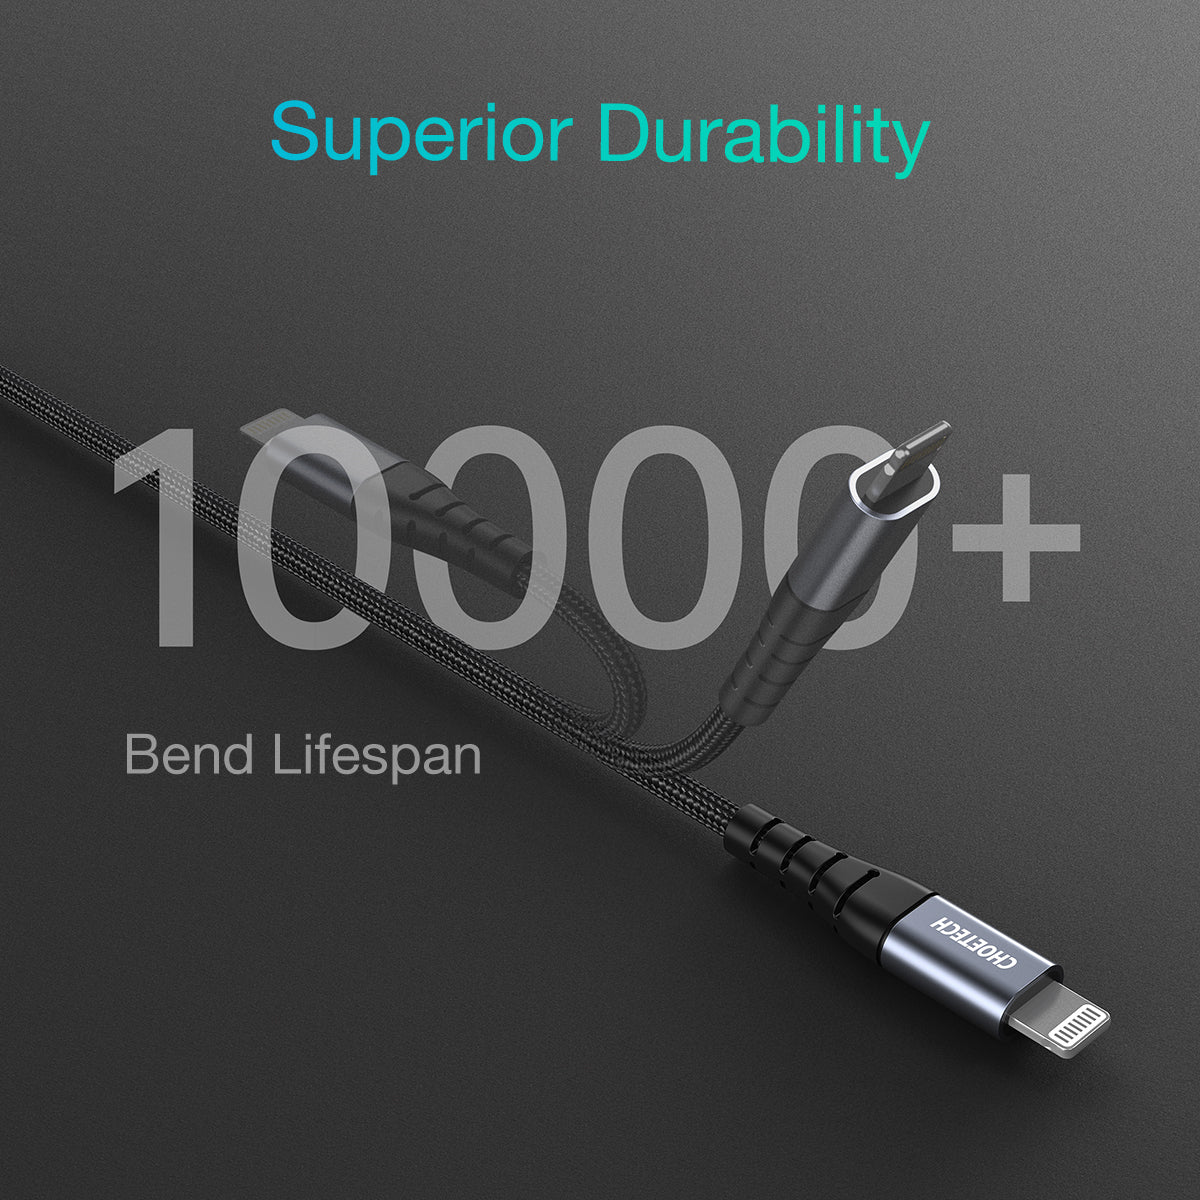 IP0039 USB-C-zu-Lightning-Kabel 10 Fuß/4 Fuß für iPhone 12 [Apple MFi-zertifiziert] Geflochtenes Nylonkabel